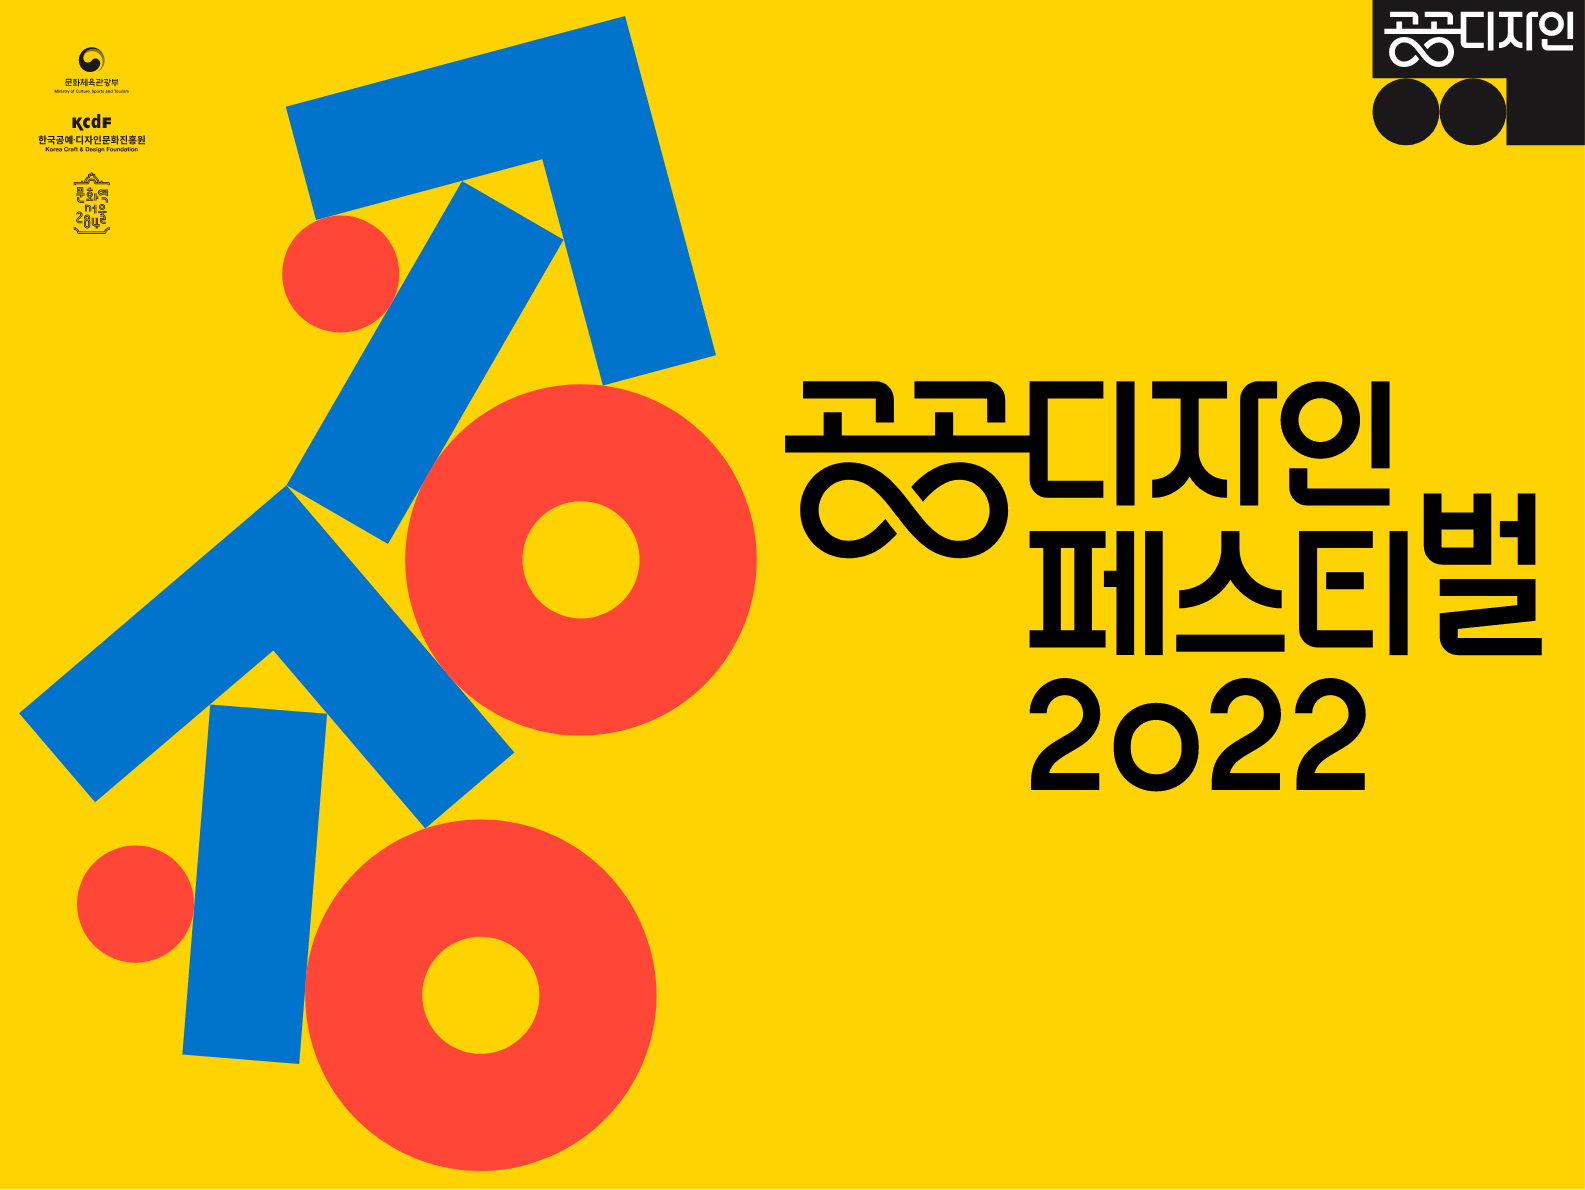 공공디자인 패스티벌 2022 BI 포스터